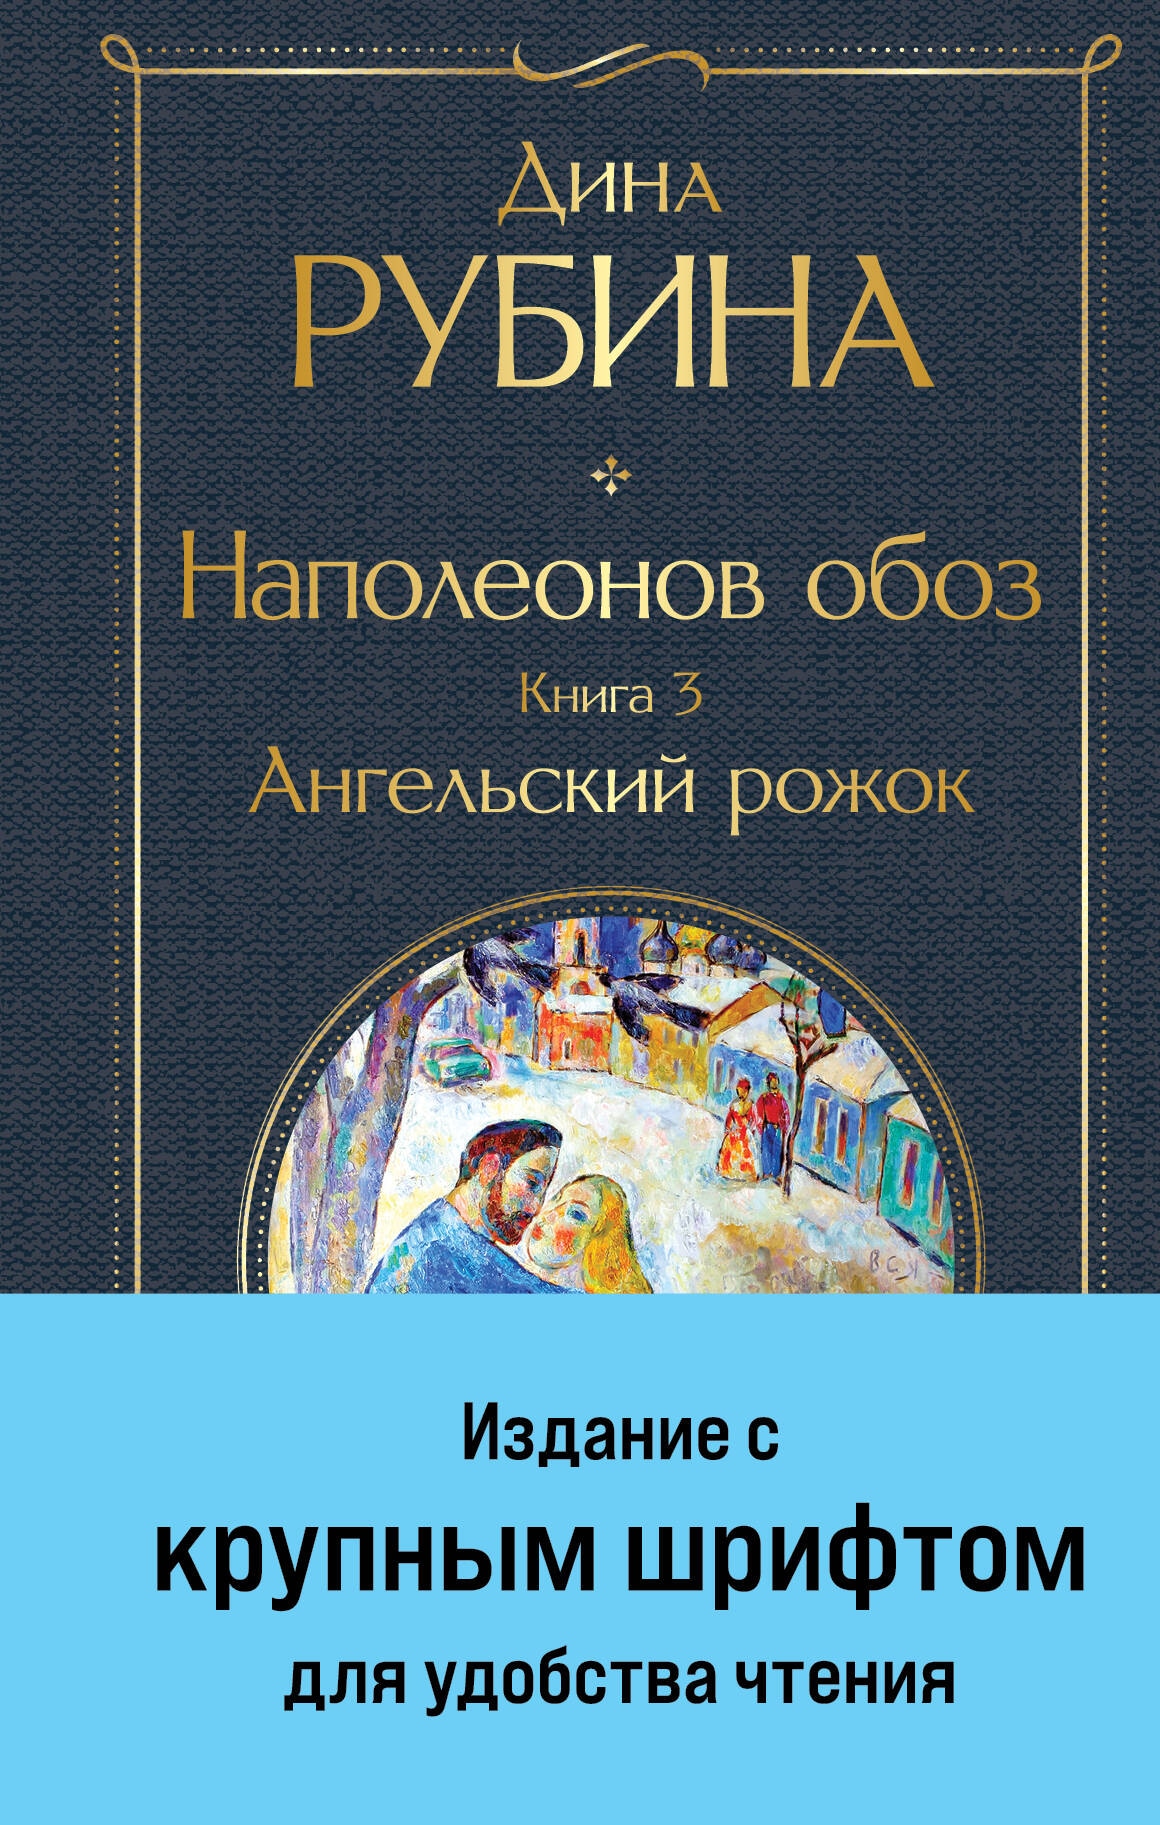 Book “Наполеонов обоз. Книга 3: Ангельский рожок” by Дина Рубина — 2024